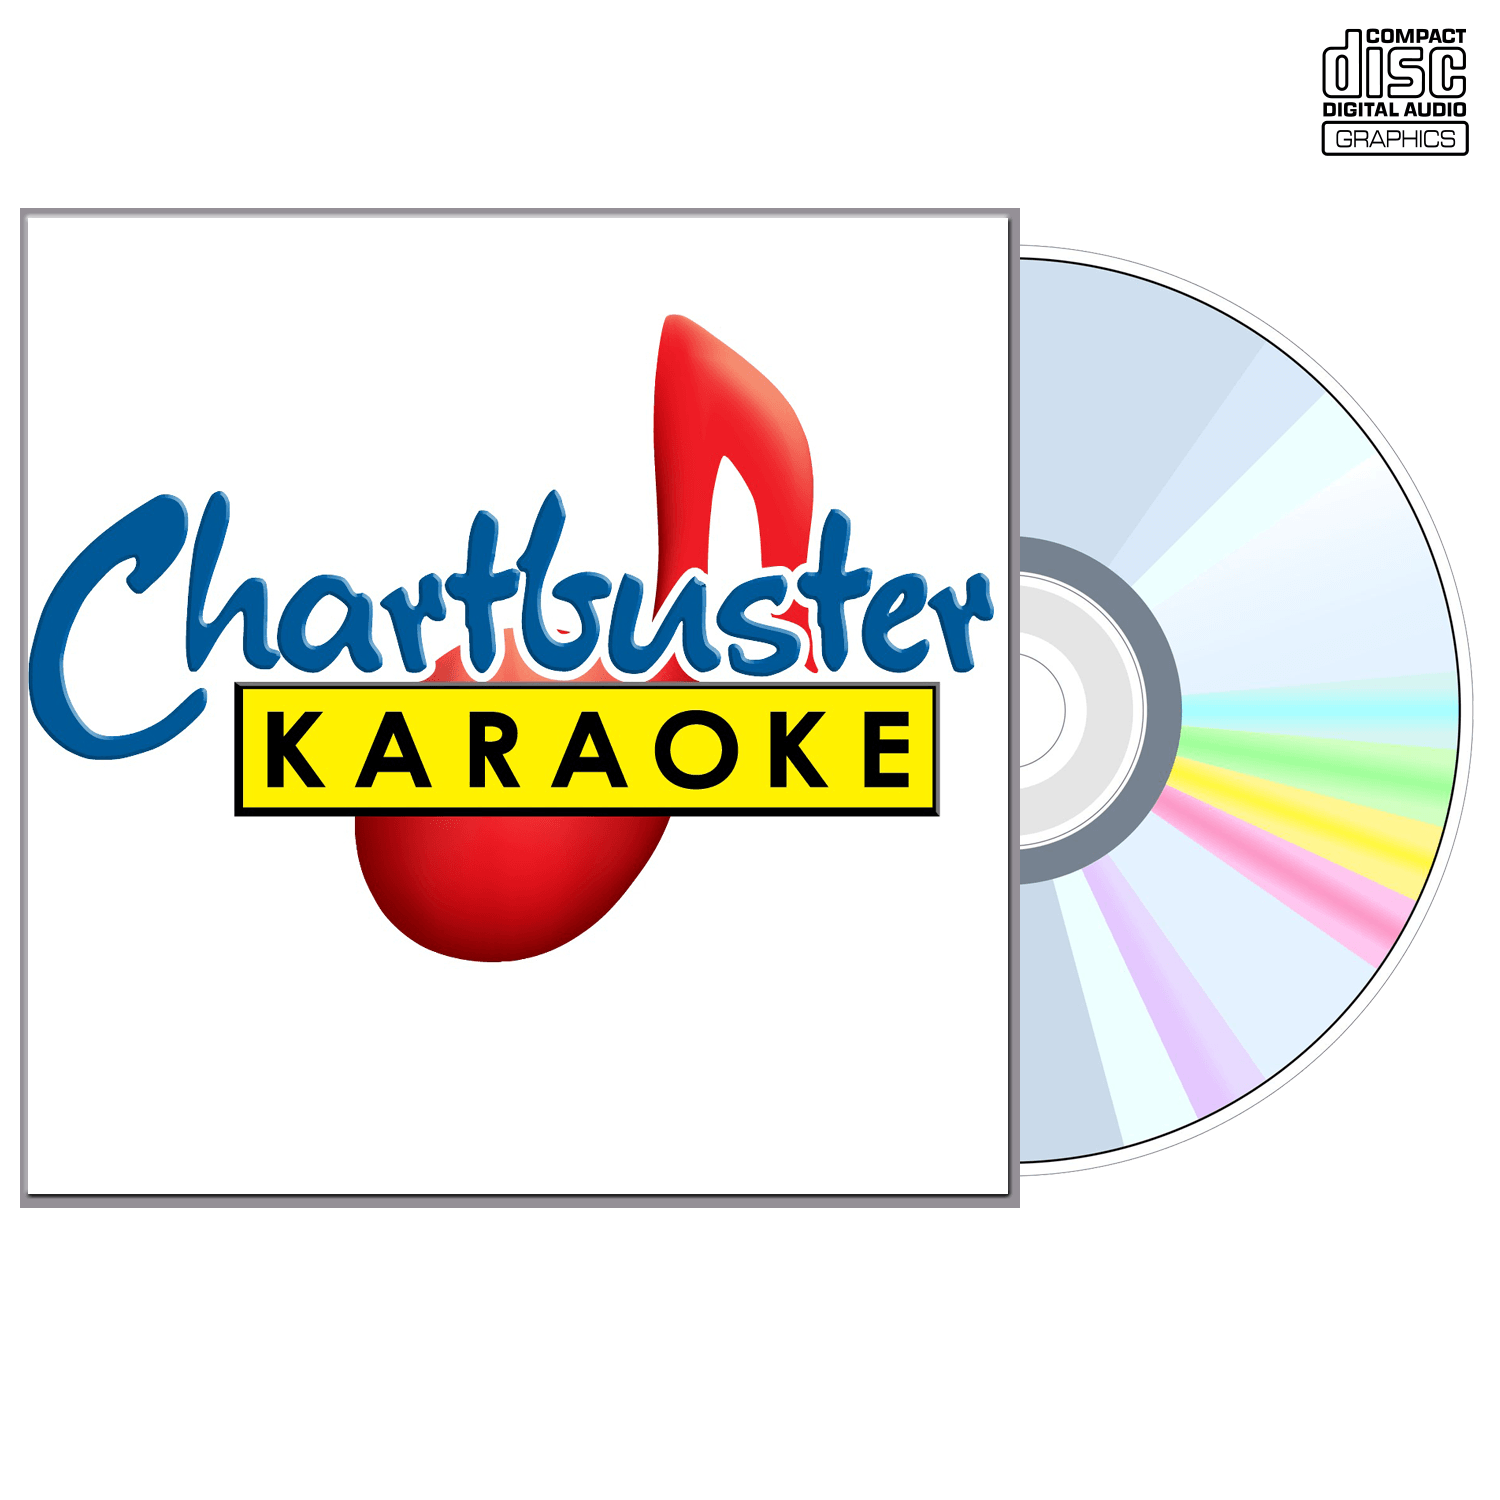 Tamara Walker - CD+G - Chartbuster Karaoke - Karaoke Home Entertainment